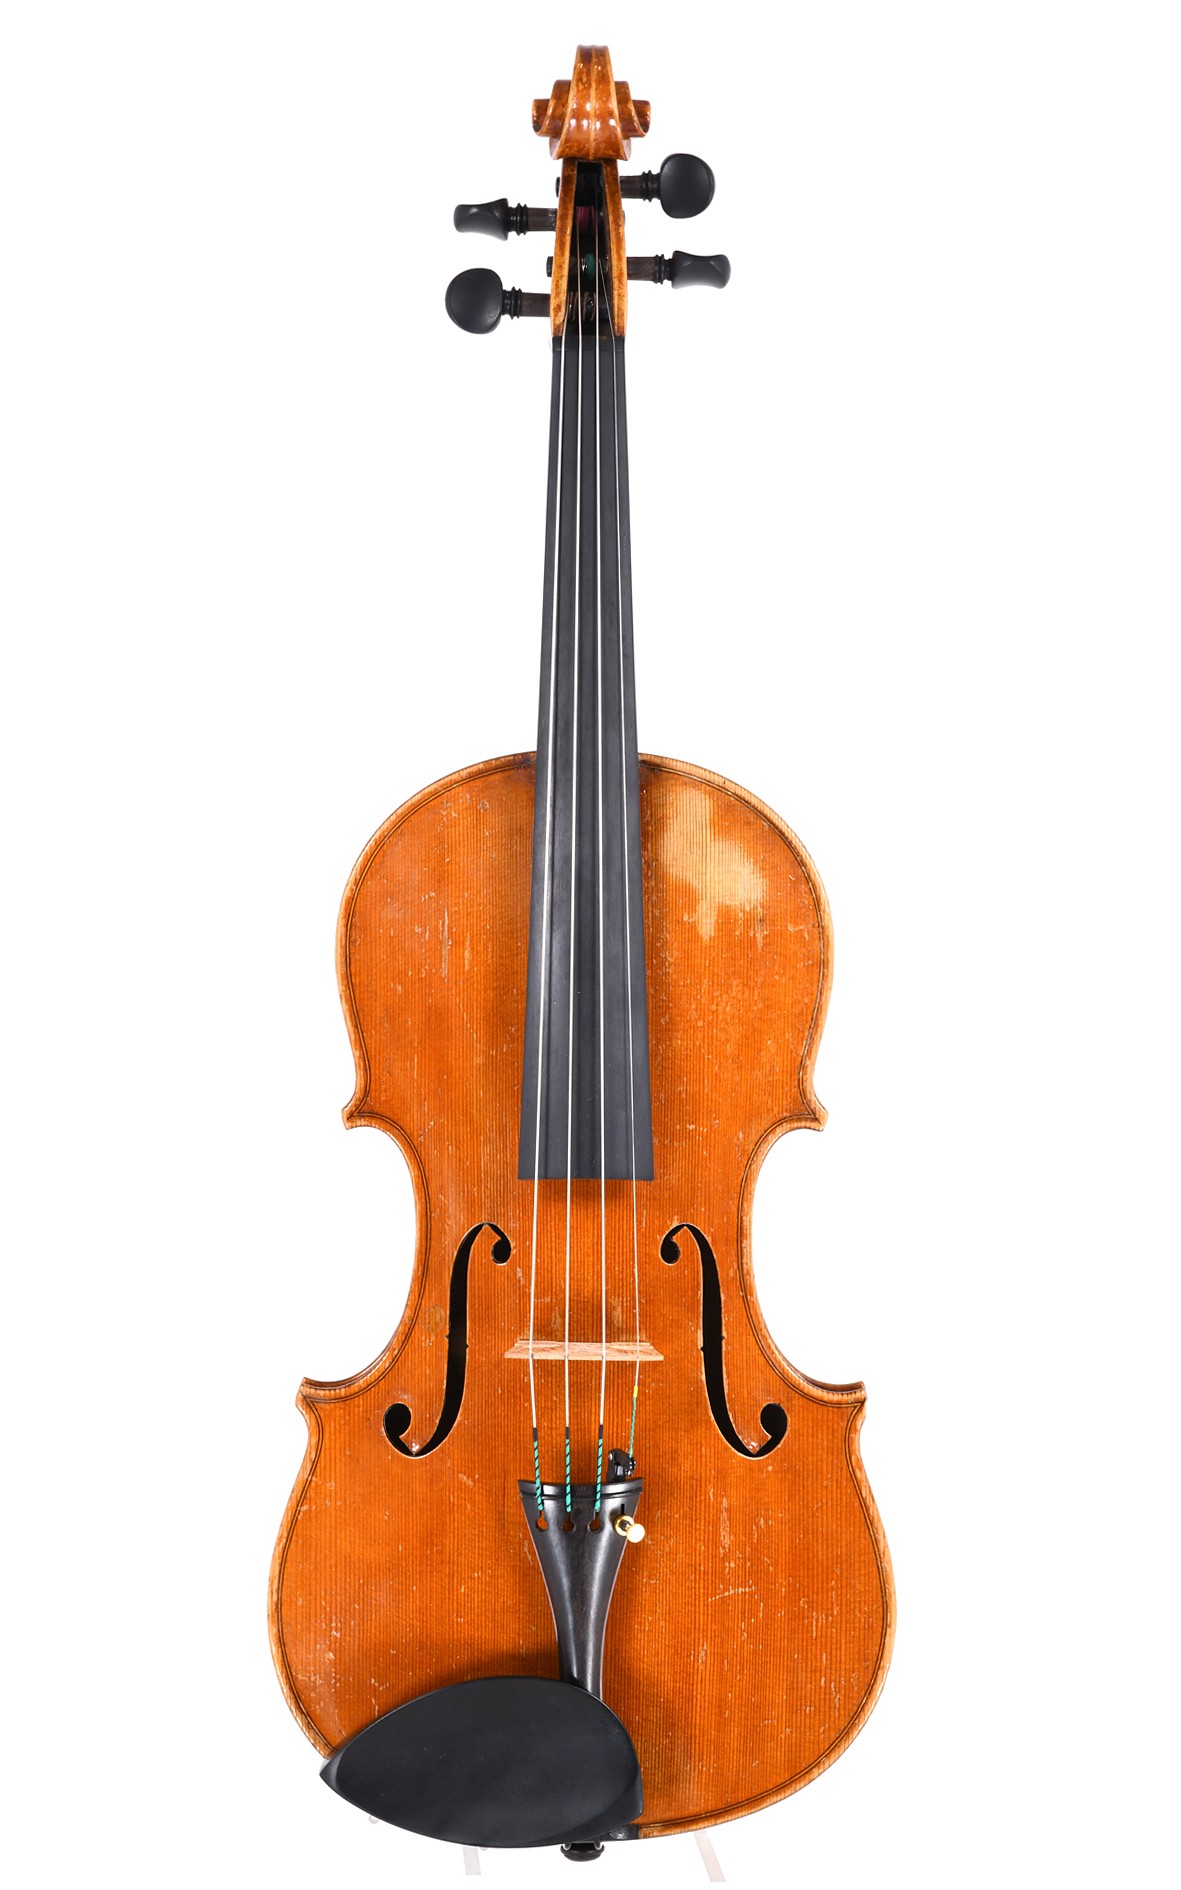 Gustaver Menzinger violin